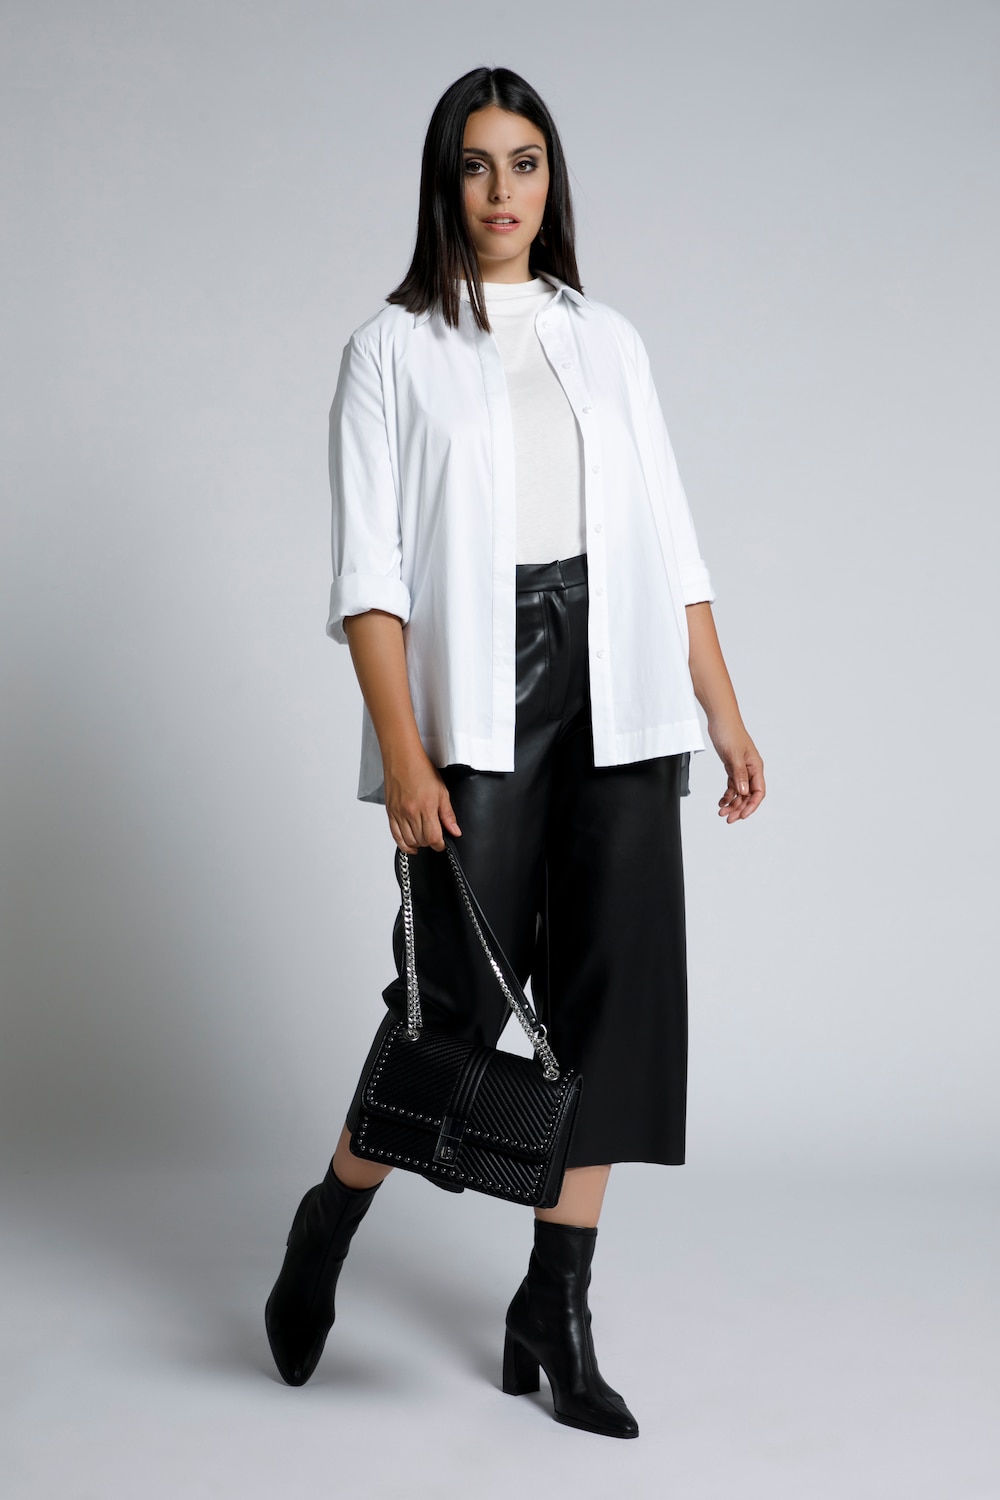 Plus Size Leather Look Wide Leg Culotte Pants, Woman, black, size: 16/18, synthetic fibers, Ulla Popken